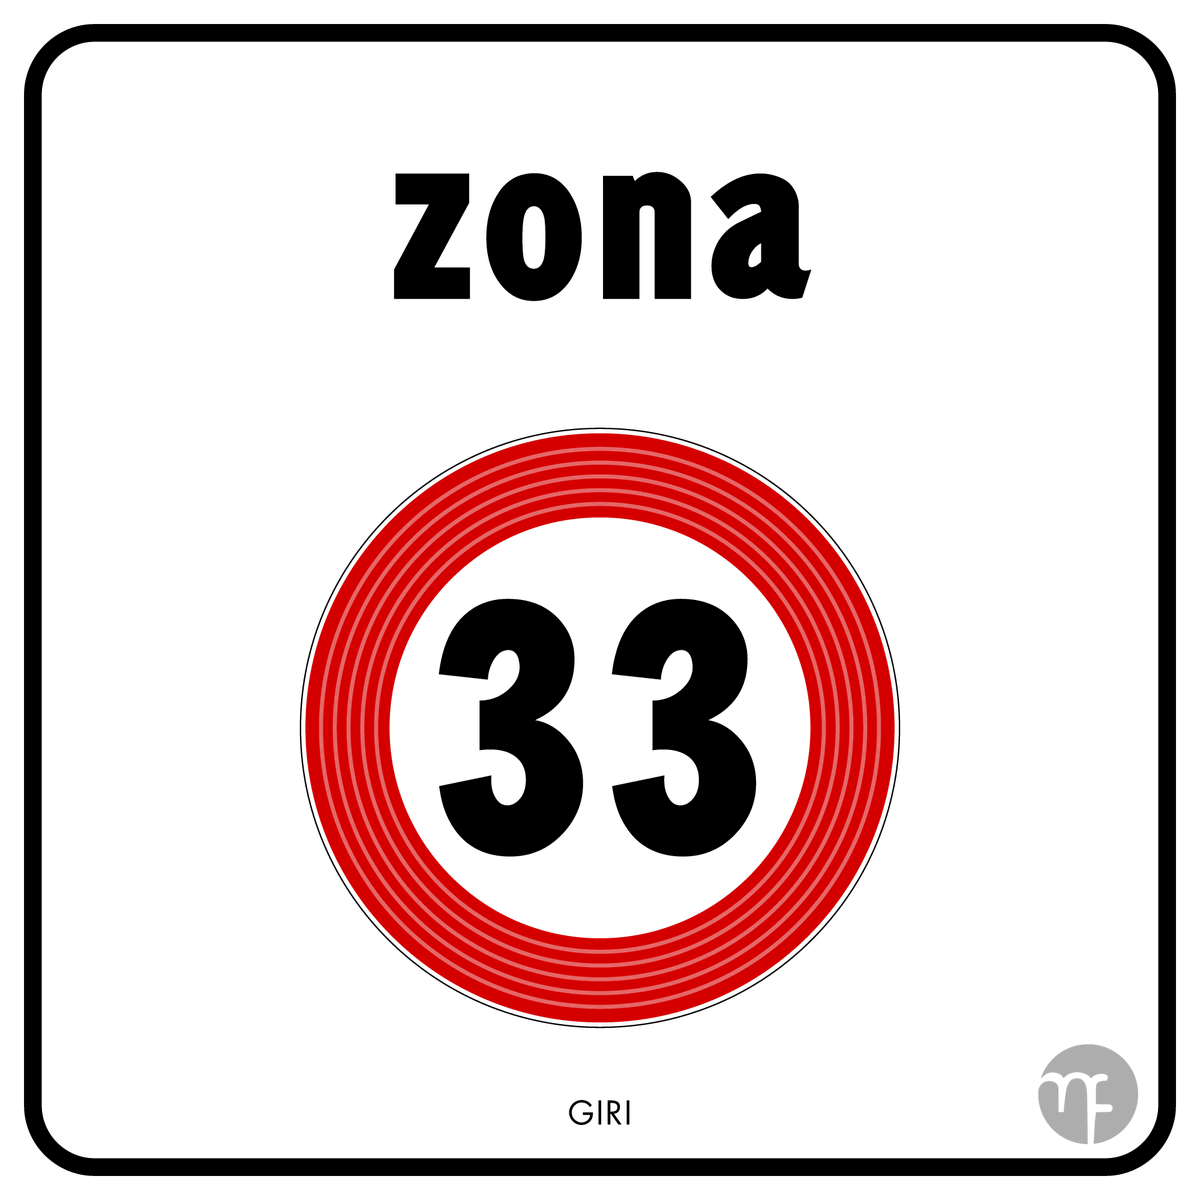 Pensavo di proporre un restyling alla segnaletica 'zona 30' 
-----
#zona30 #bologna #UnescoCityOfMusic #AccademiaFilarmonica #MuseoInternazionaleDellaMusica #teatrocomunalebologna